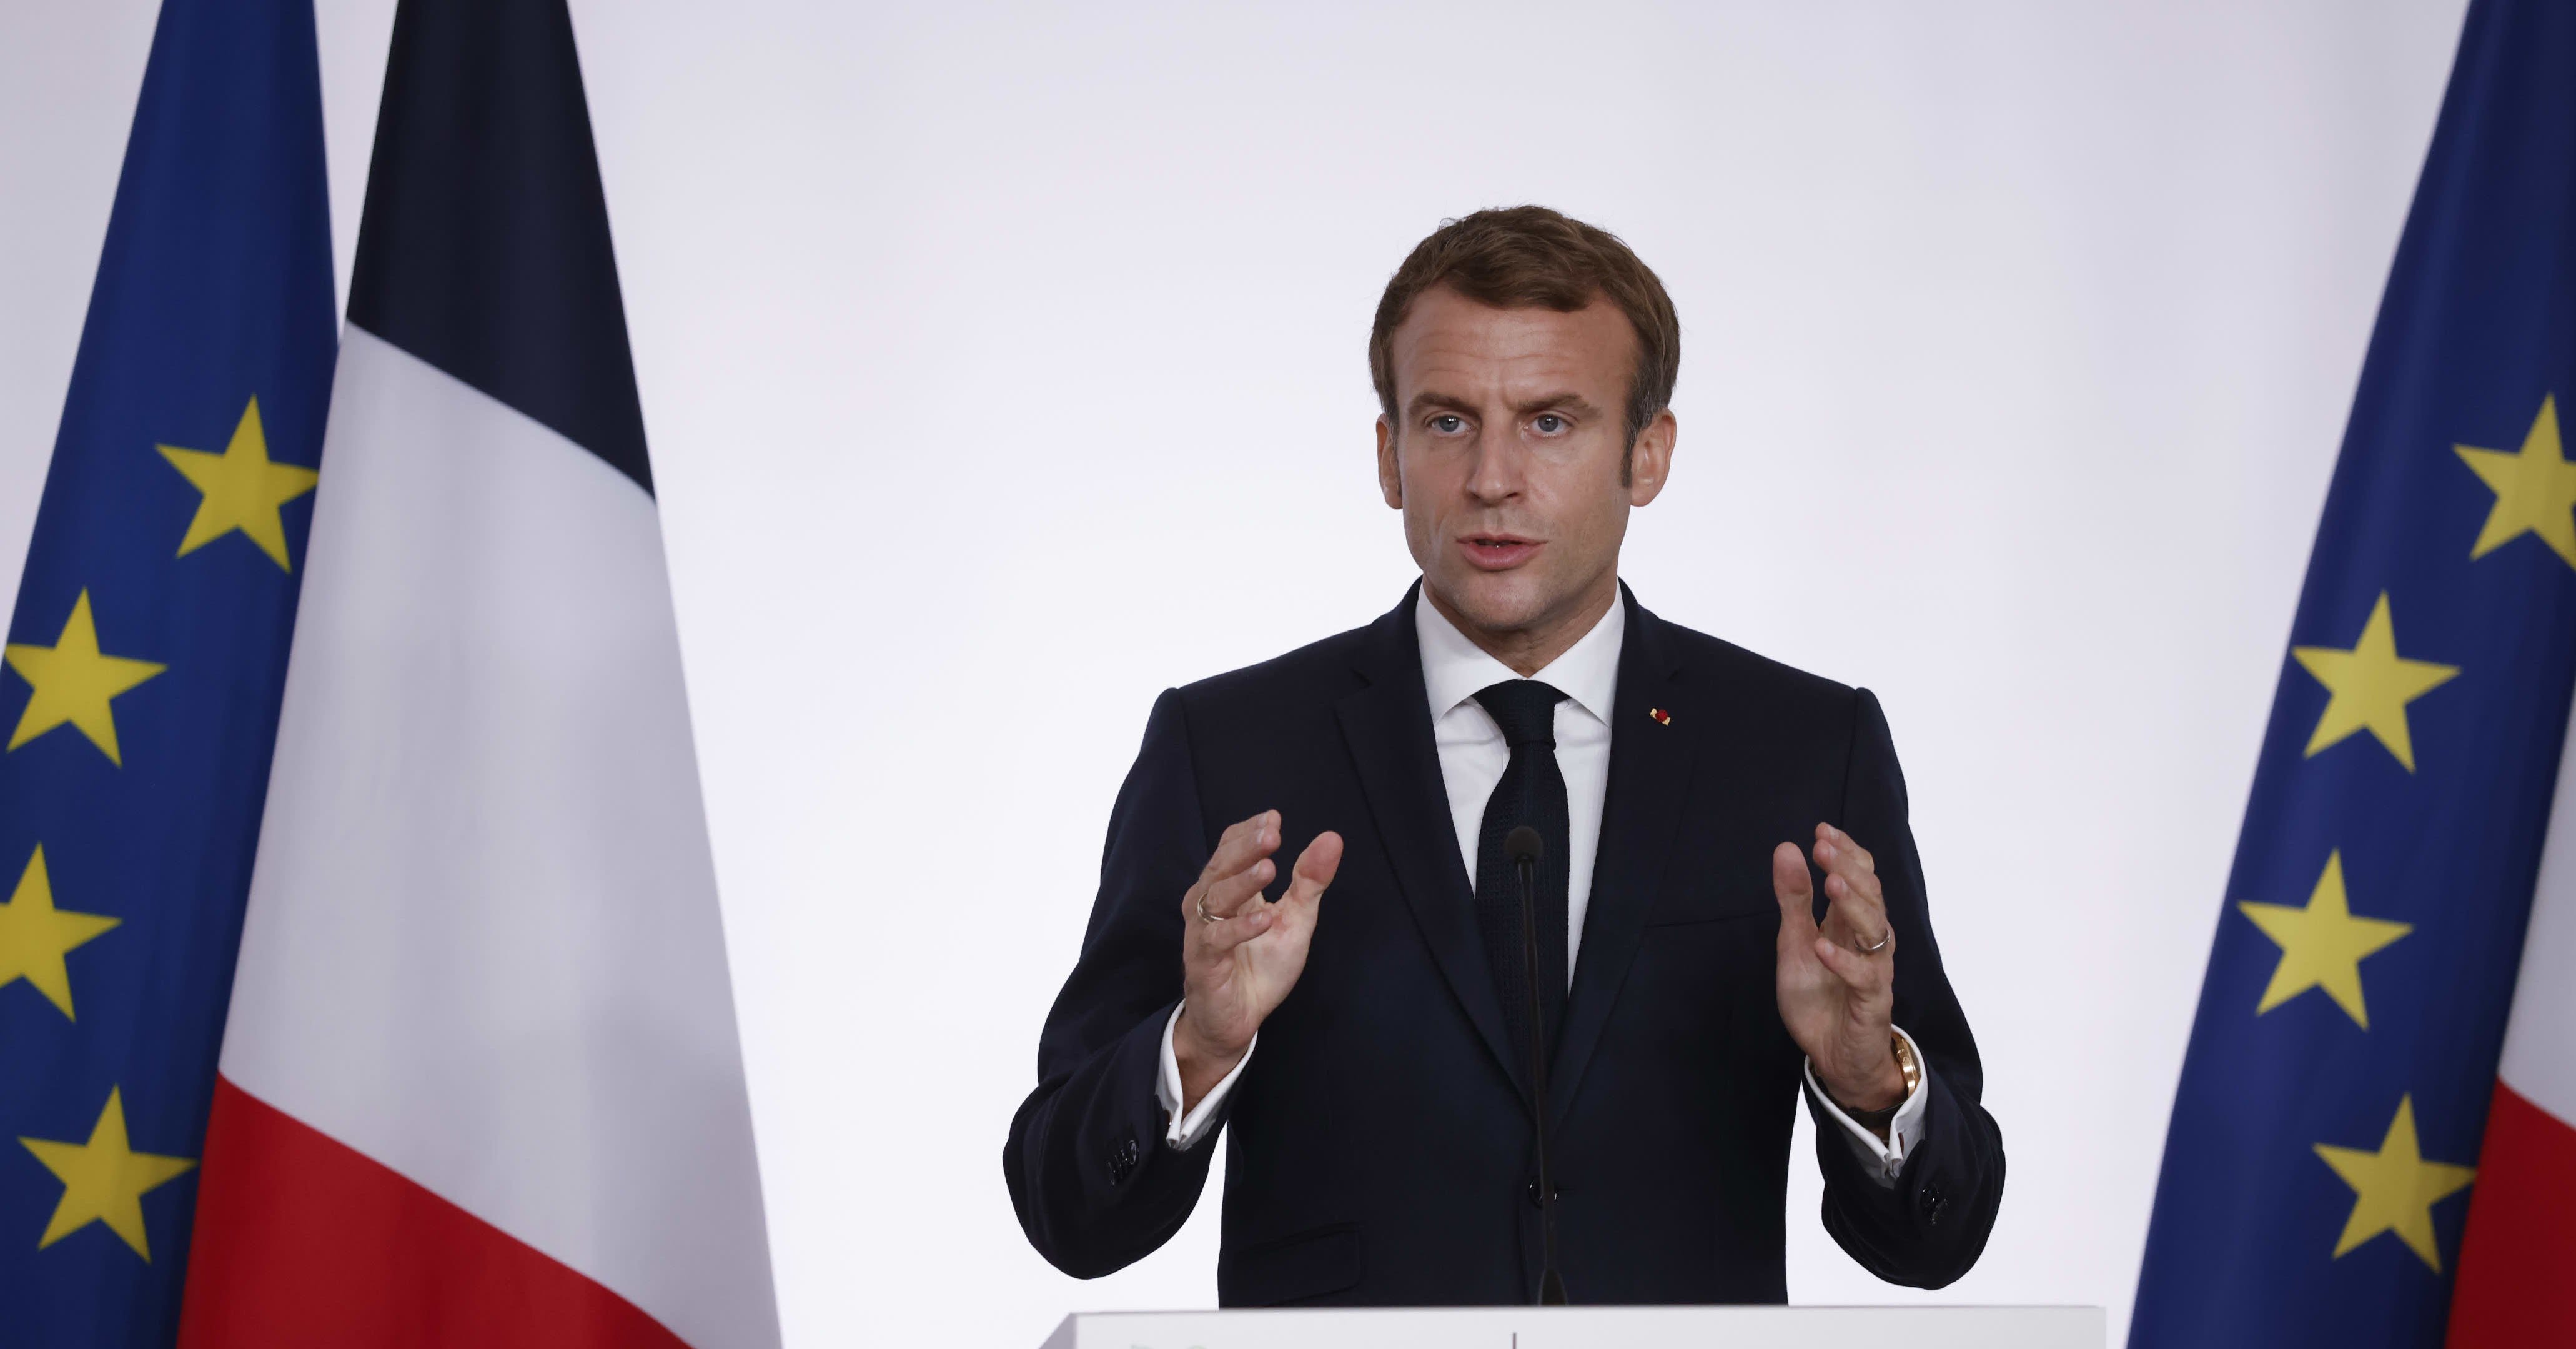 Presidentti Macron vaihtoi kaikessa hiljaisuudessa Ranskan lipun väriä